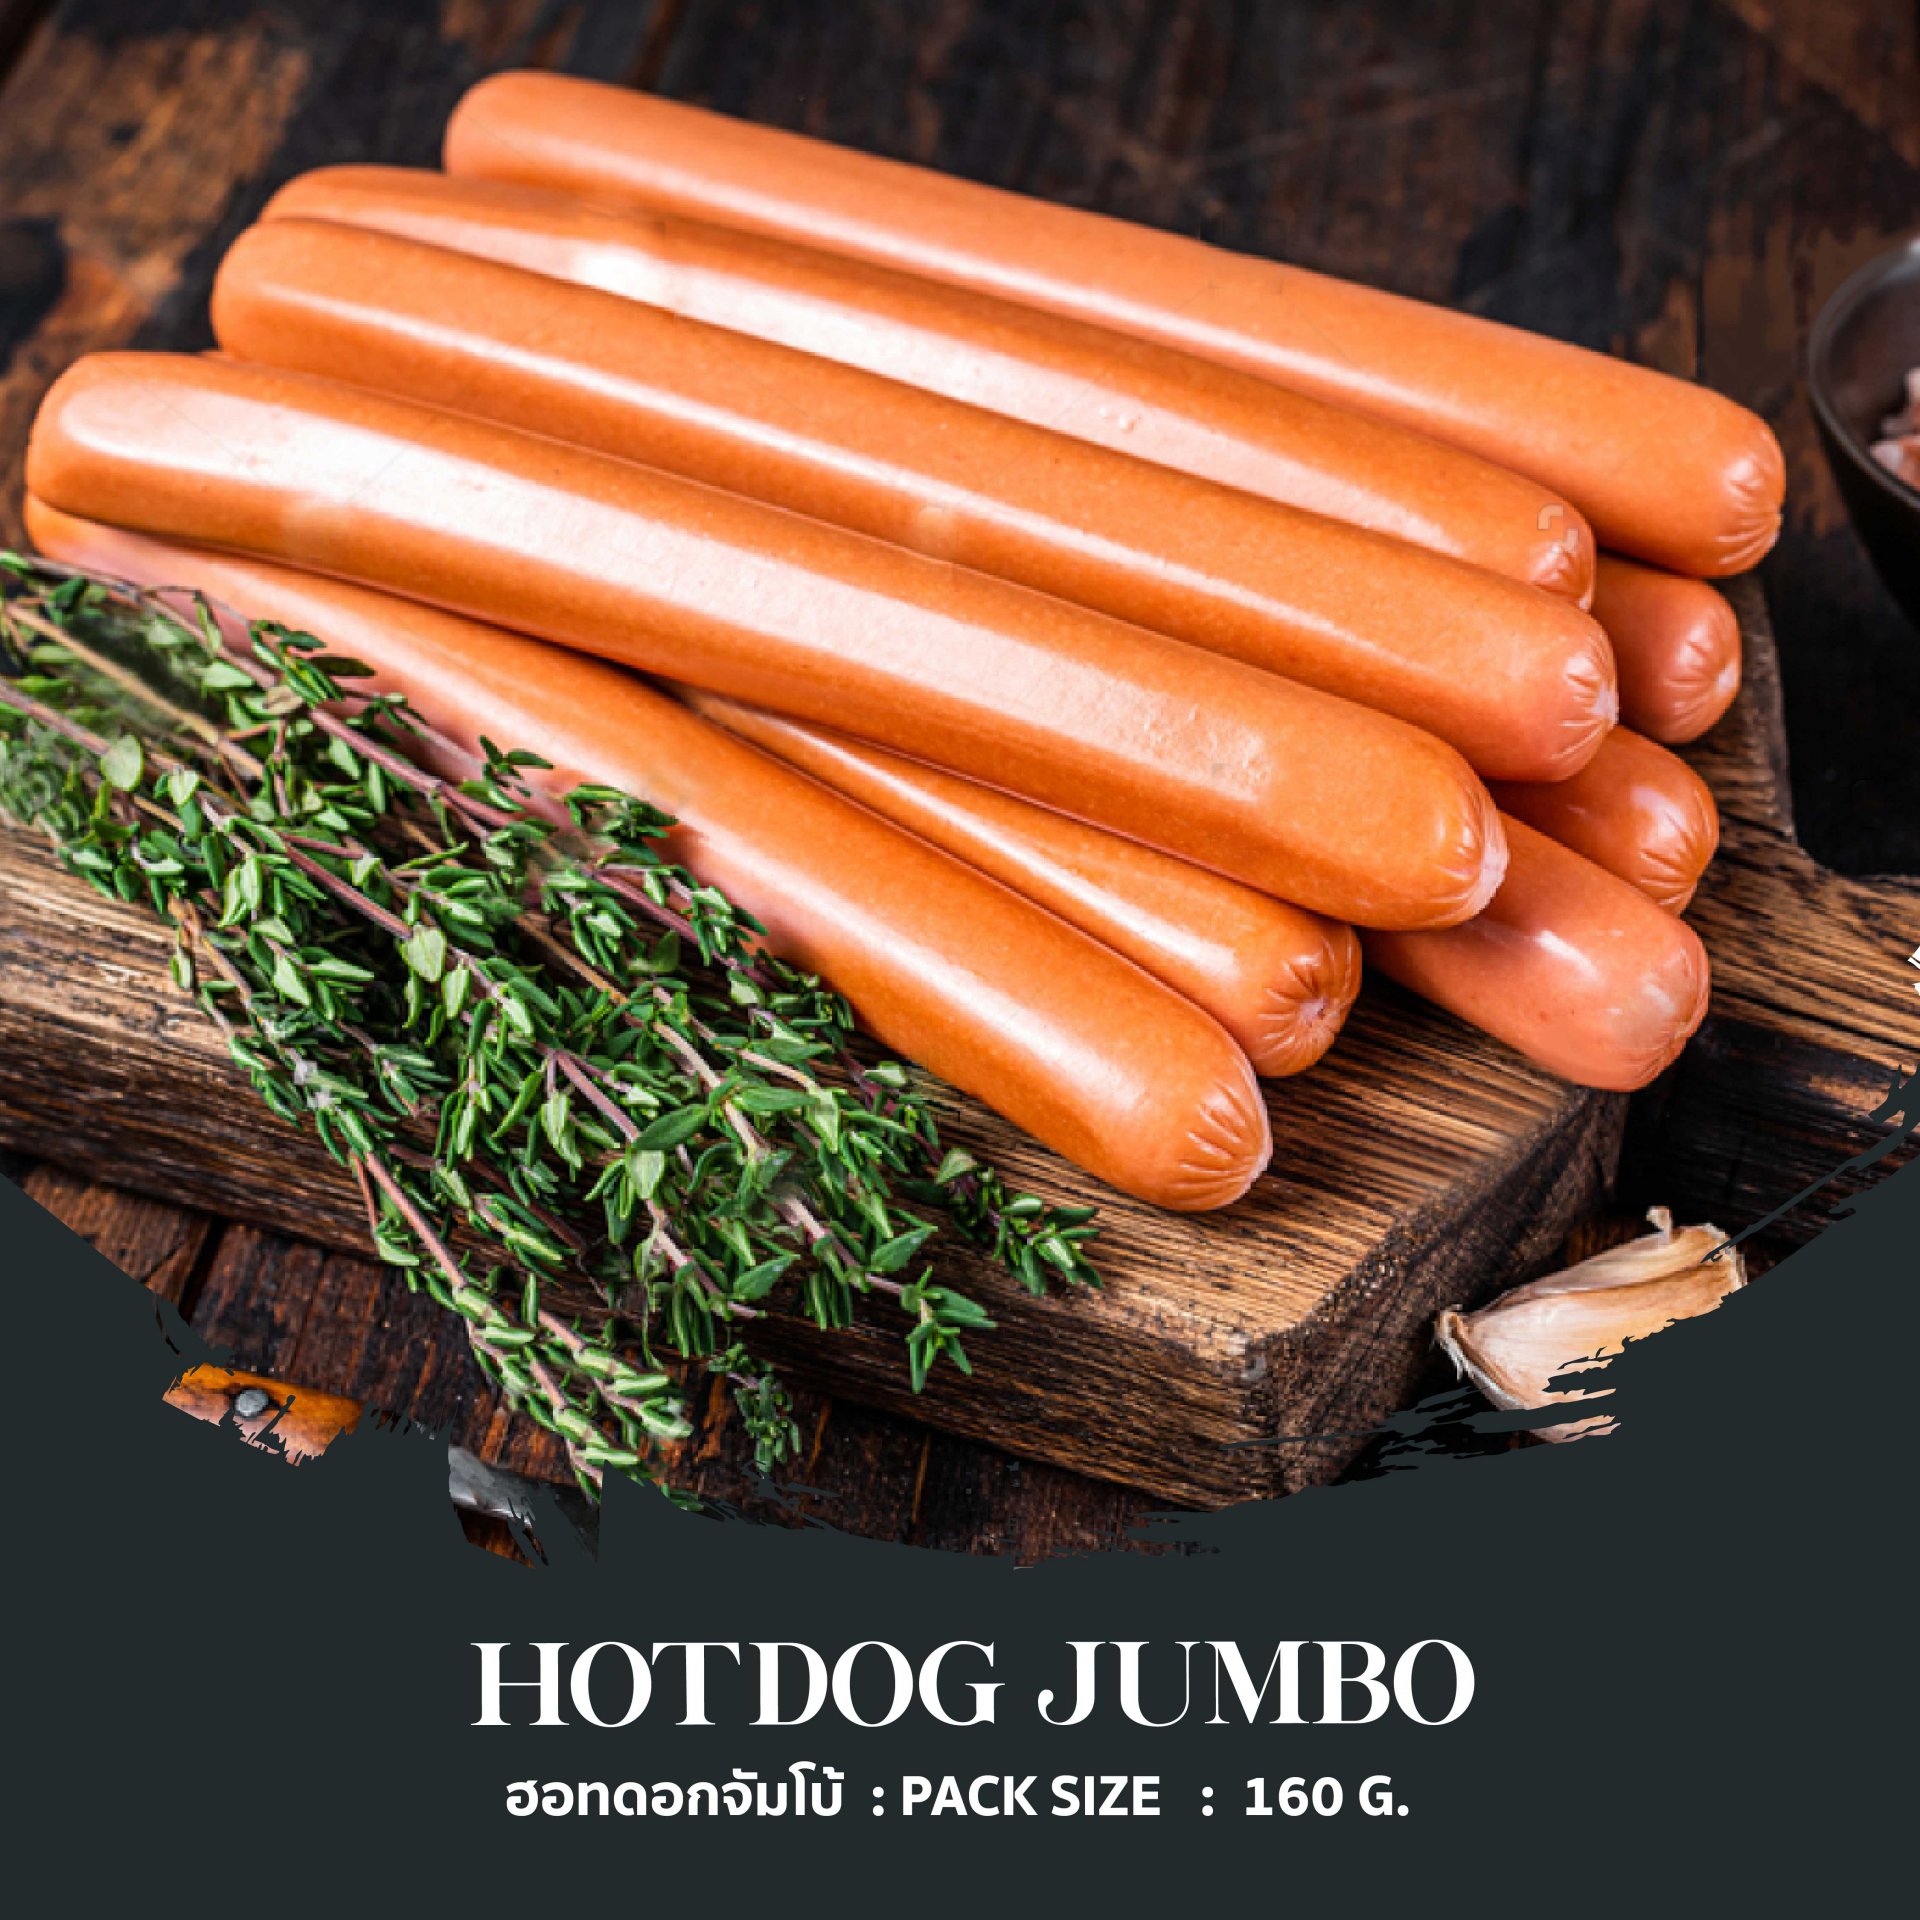 Hotdog JumBo